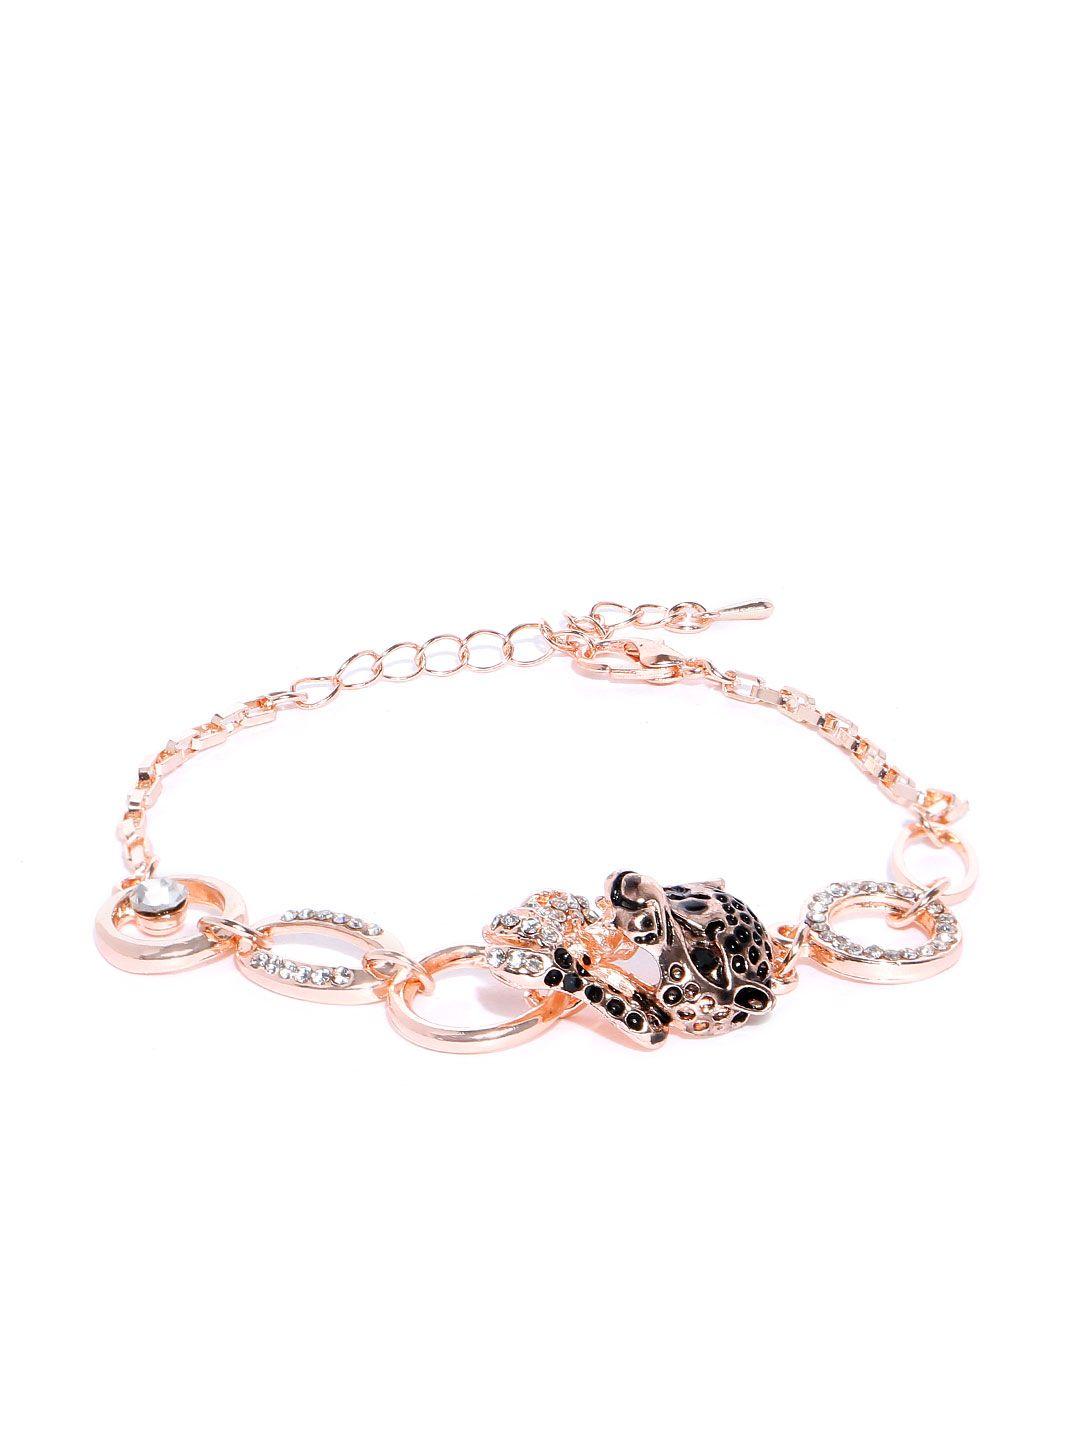 youbella black rose gold-plated animal shaped link bracelet